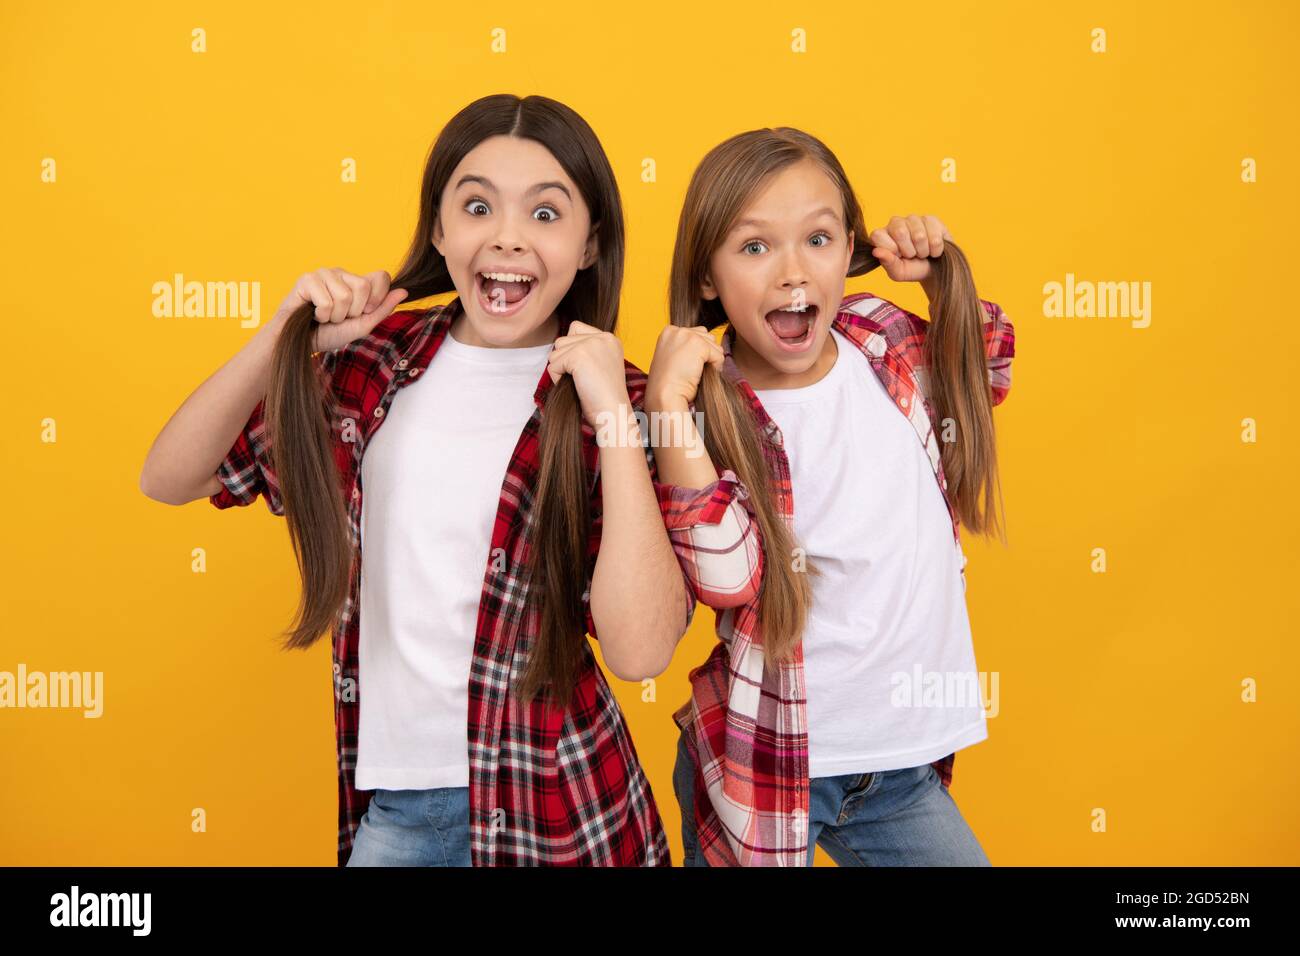 Verblüffte Kinder im lässigen karierten Hemd halten lange, gerade Haare auf gelbem Hintergrund, Frisur Stockfoto